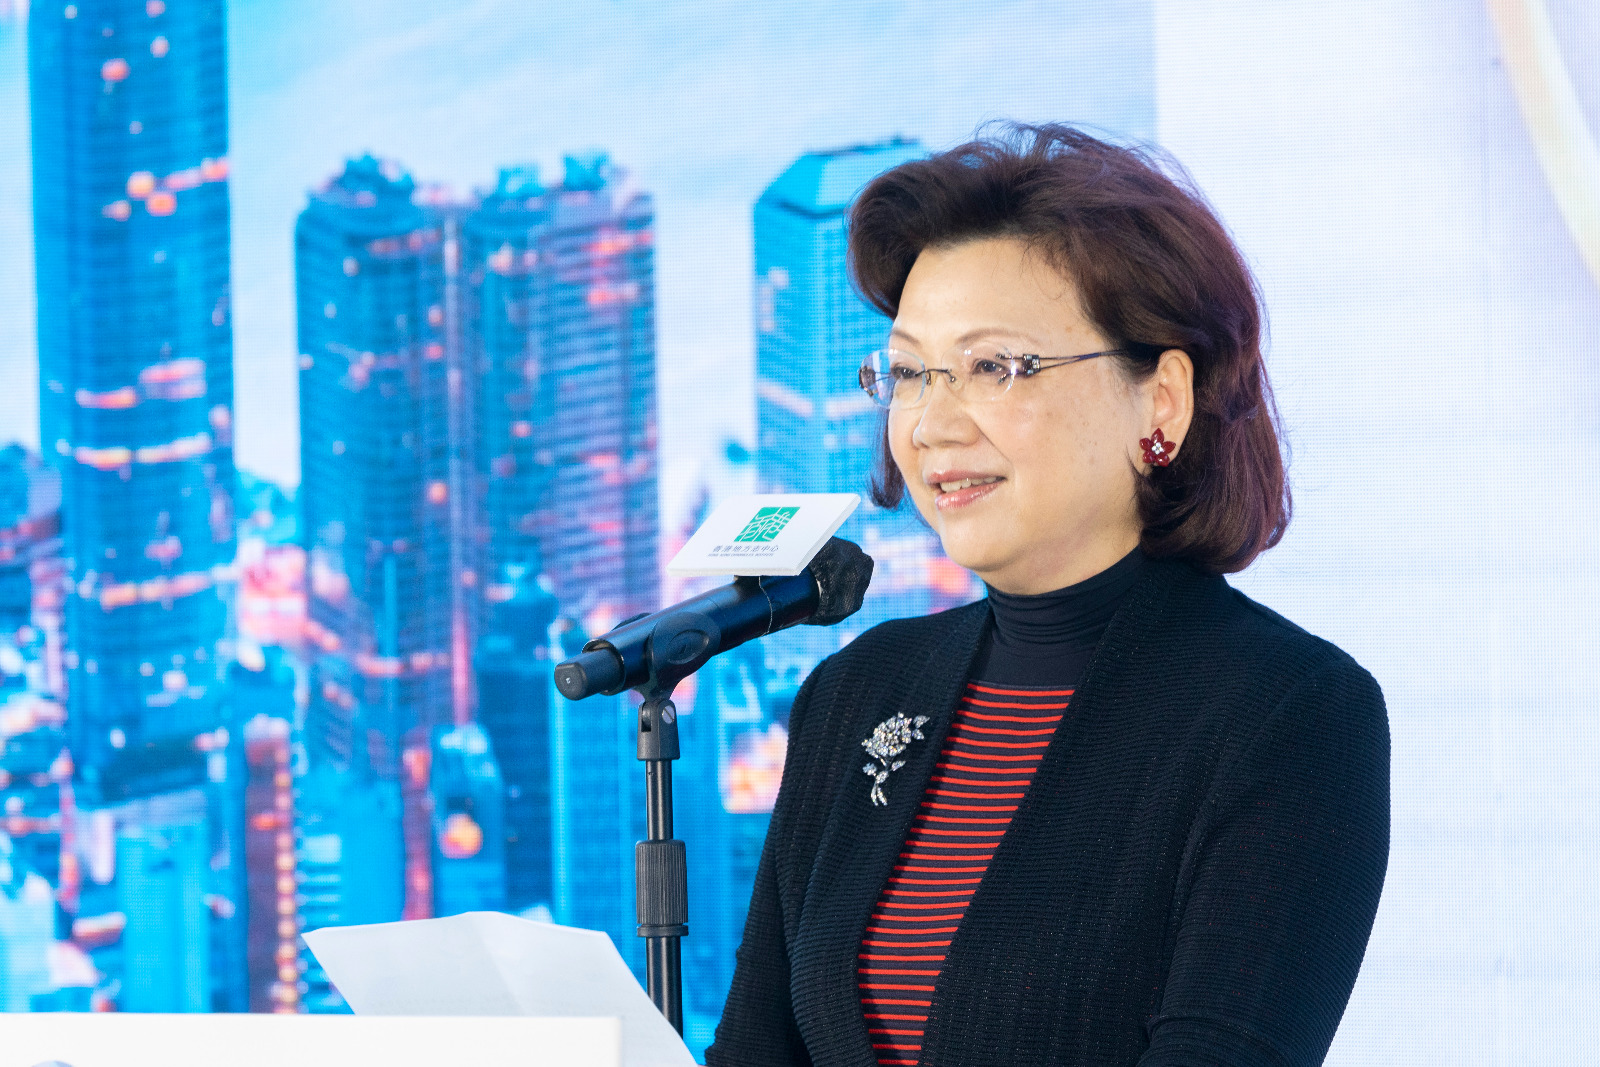 團結香港基金總裁鄭李錦芬女士表示，在大灣區發展規劃之下，兩地深化融合，既是回歸本源，也是大勢所趨。今次展覽的意義，既是對歷史的回顧，也是對未來的期許。